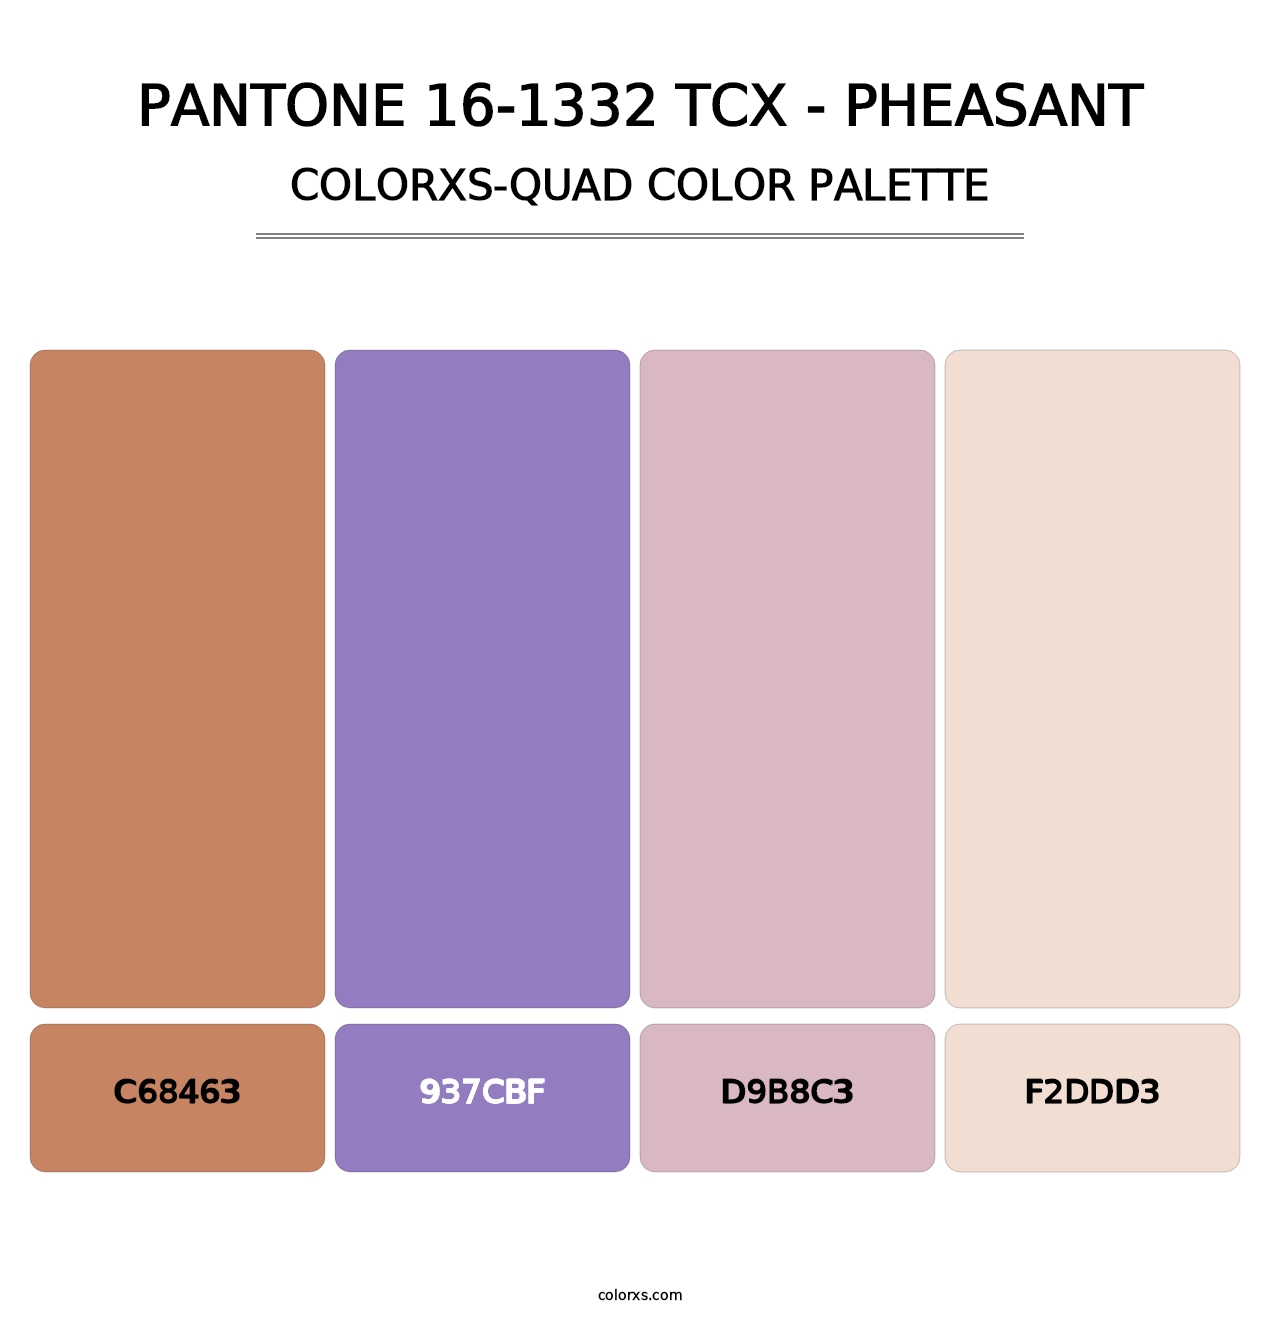 PANTONE 16-1332 TCX - Pheasant - Colorxs Quad Palette